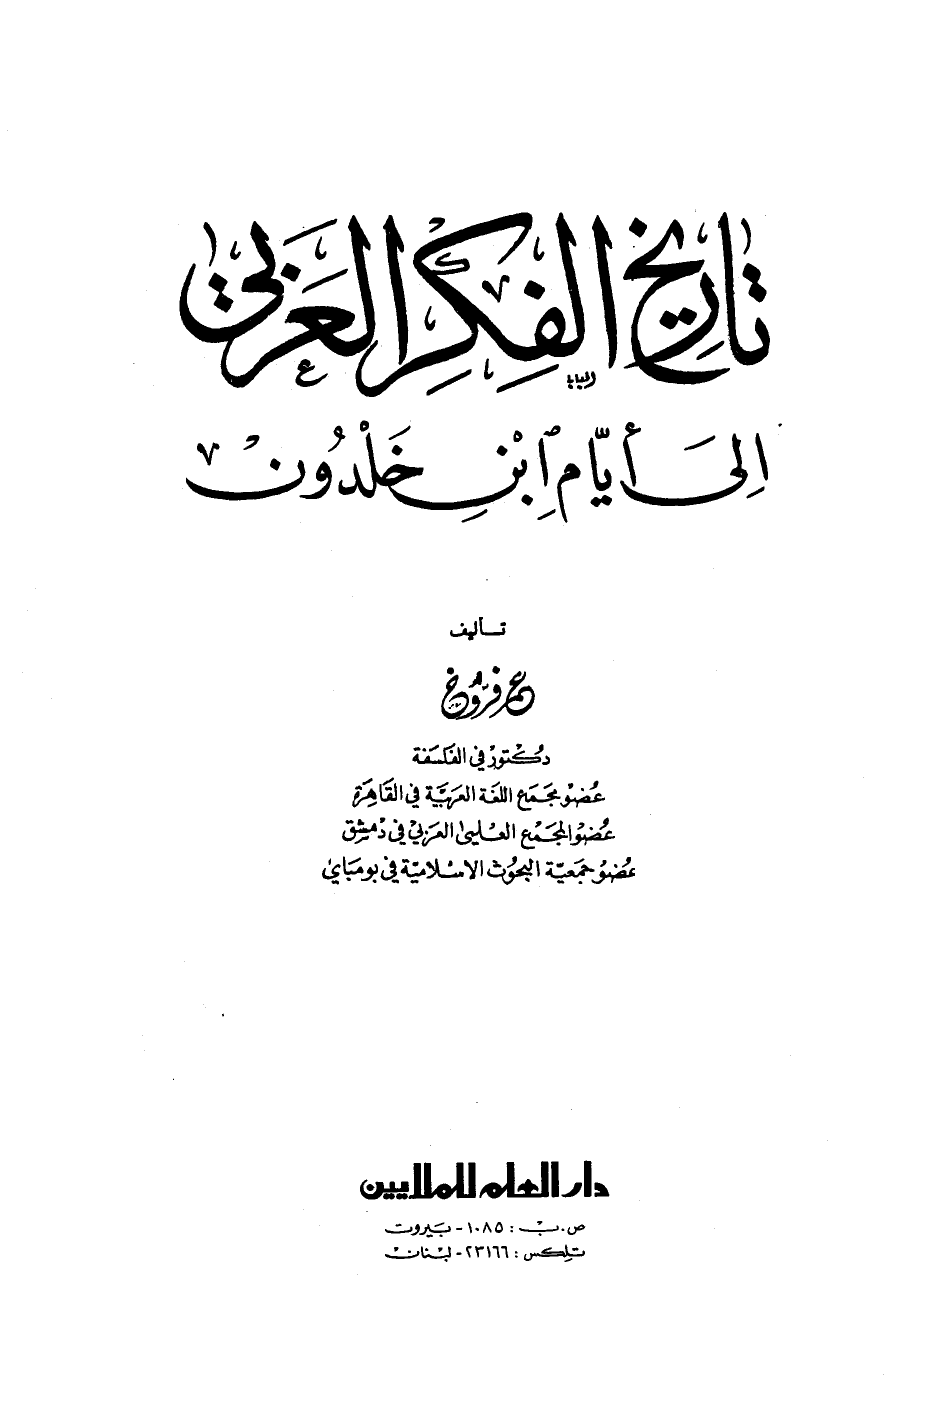 تنزيل وتحميل كتاِب تاريخ الفكر العربي إلى أيام ابن خلدون pdf برابط مباشر مجاناً